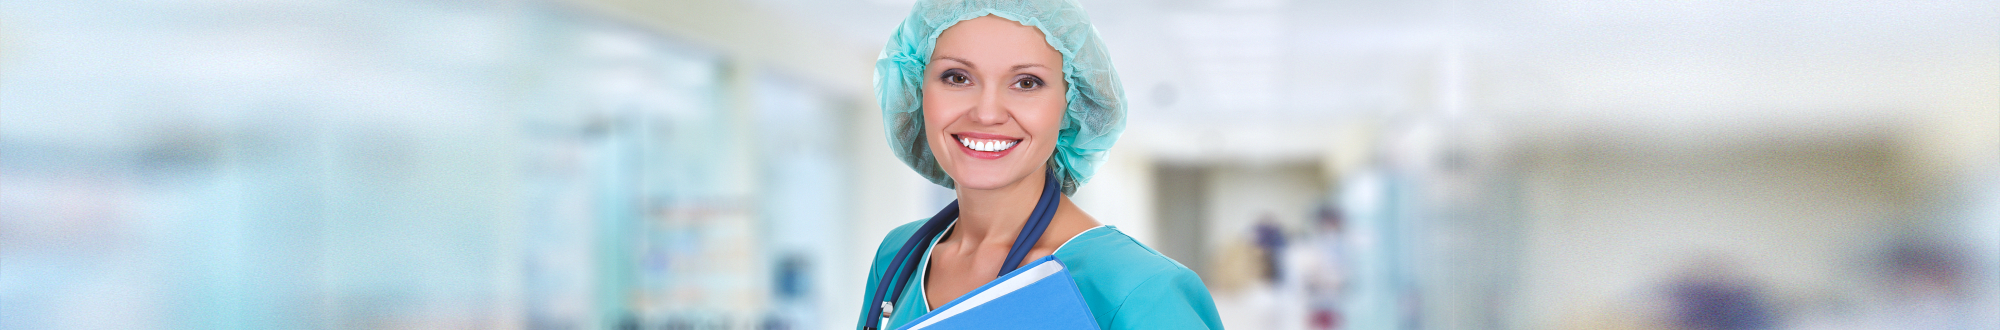 Female medical doctor smiling